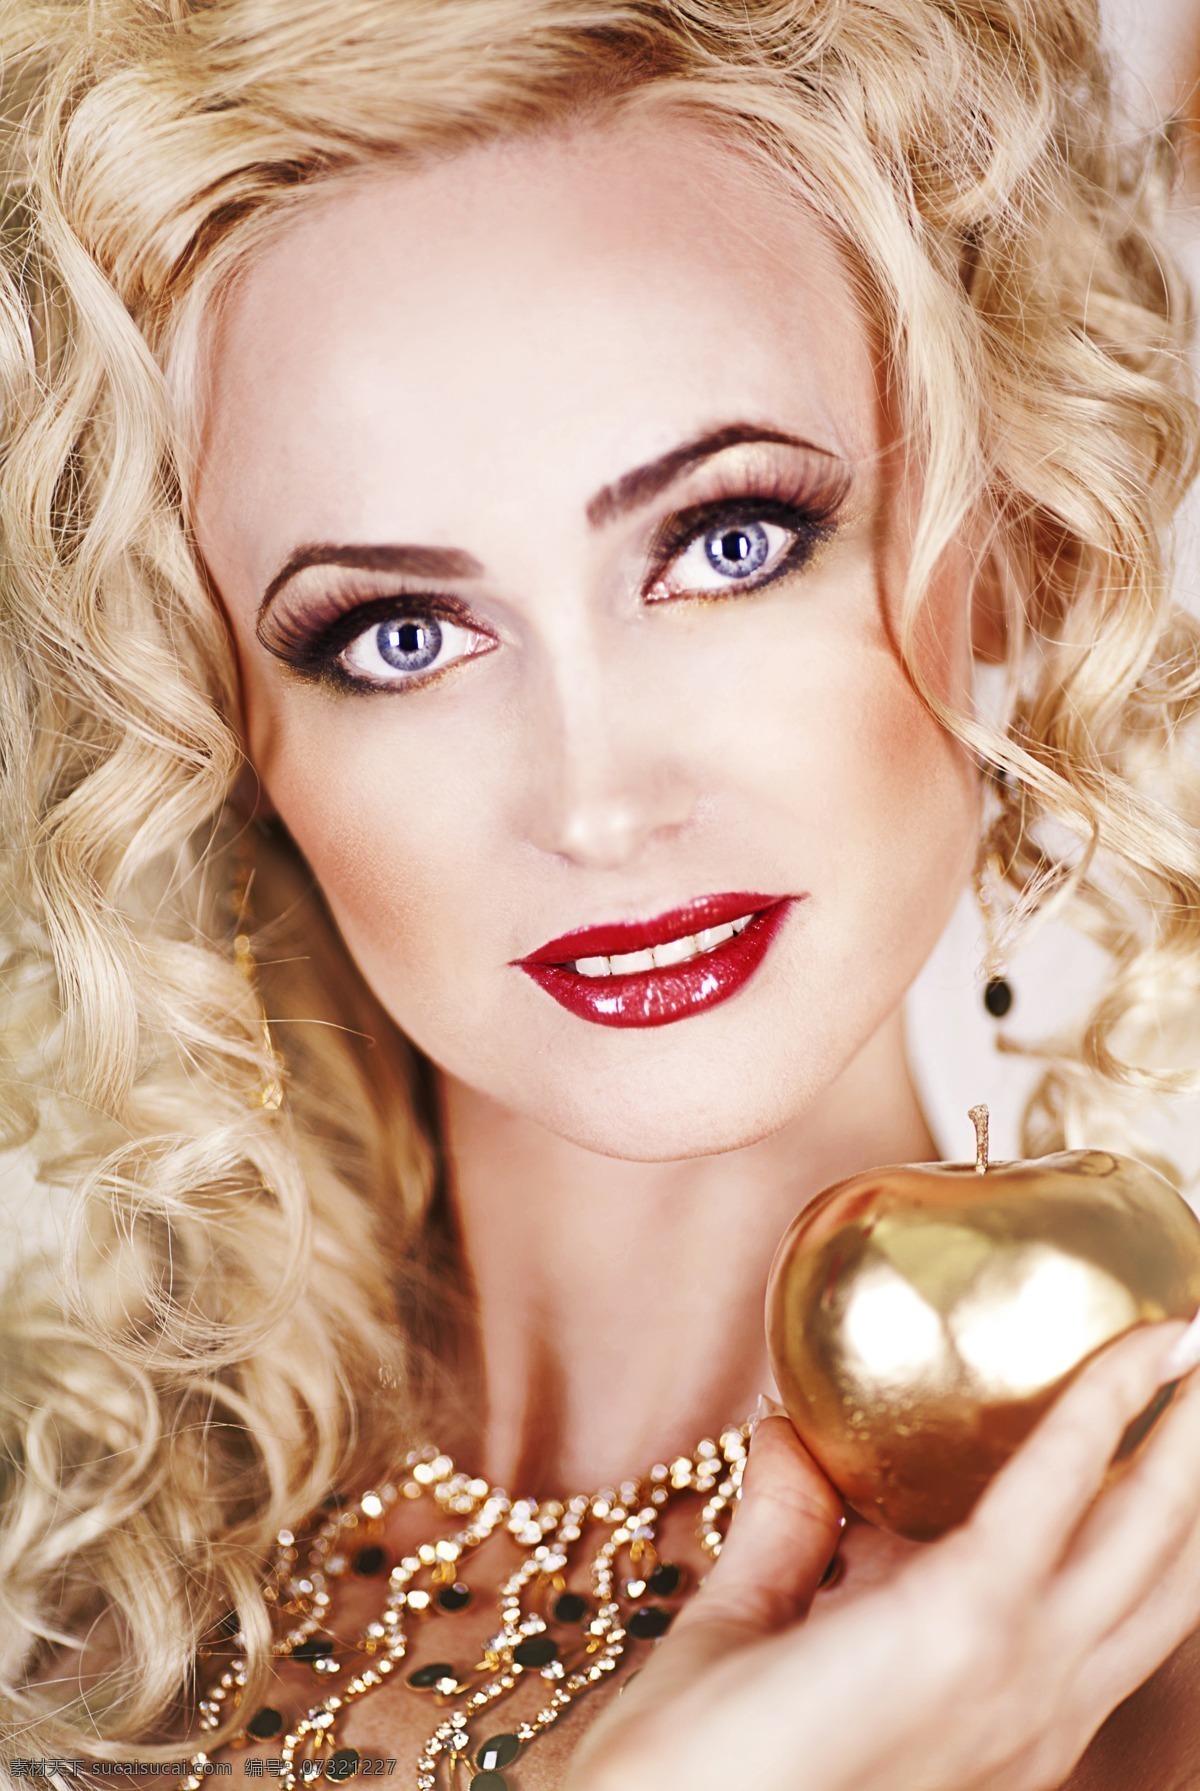 金发 美女 金色 苹果 写真 外国美女 模特 彩妆 金色苹果迷人 美丽 美女图片 人物图片